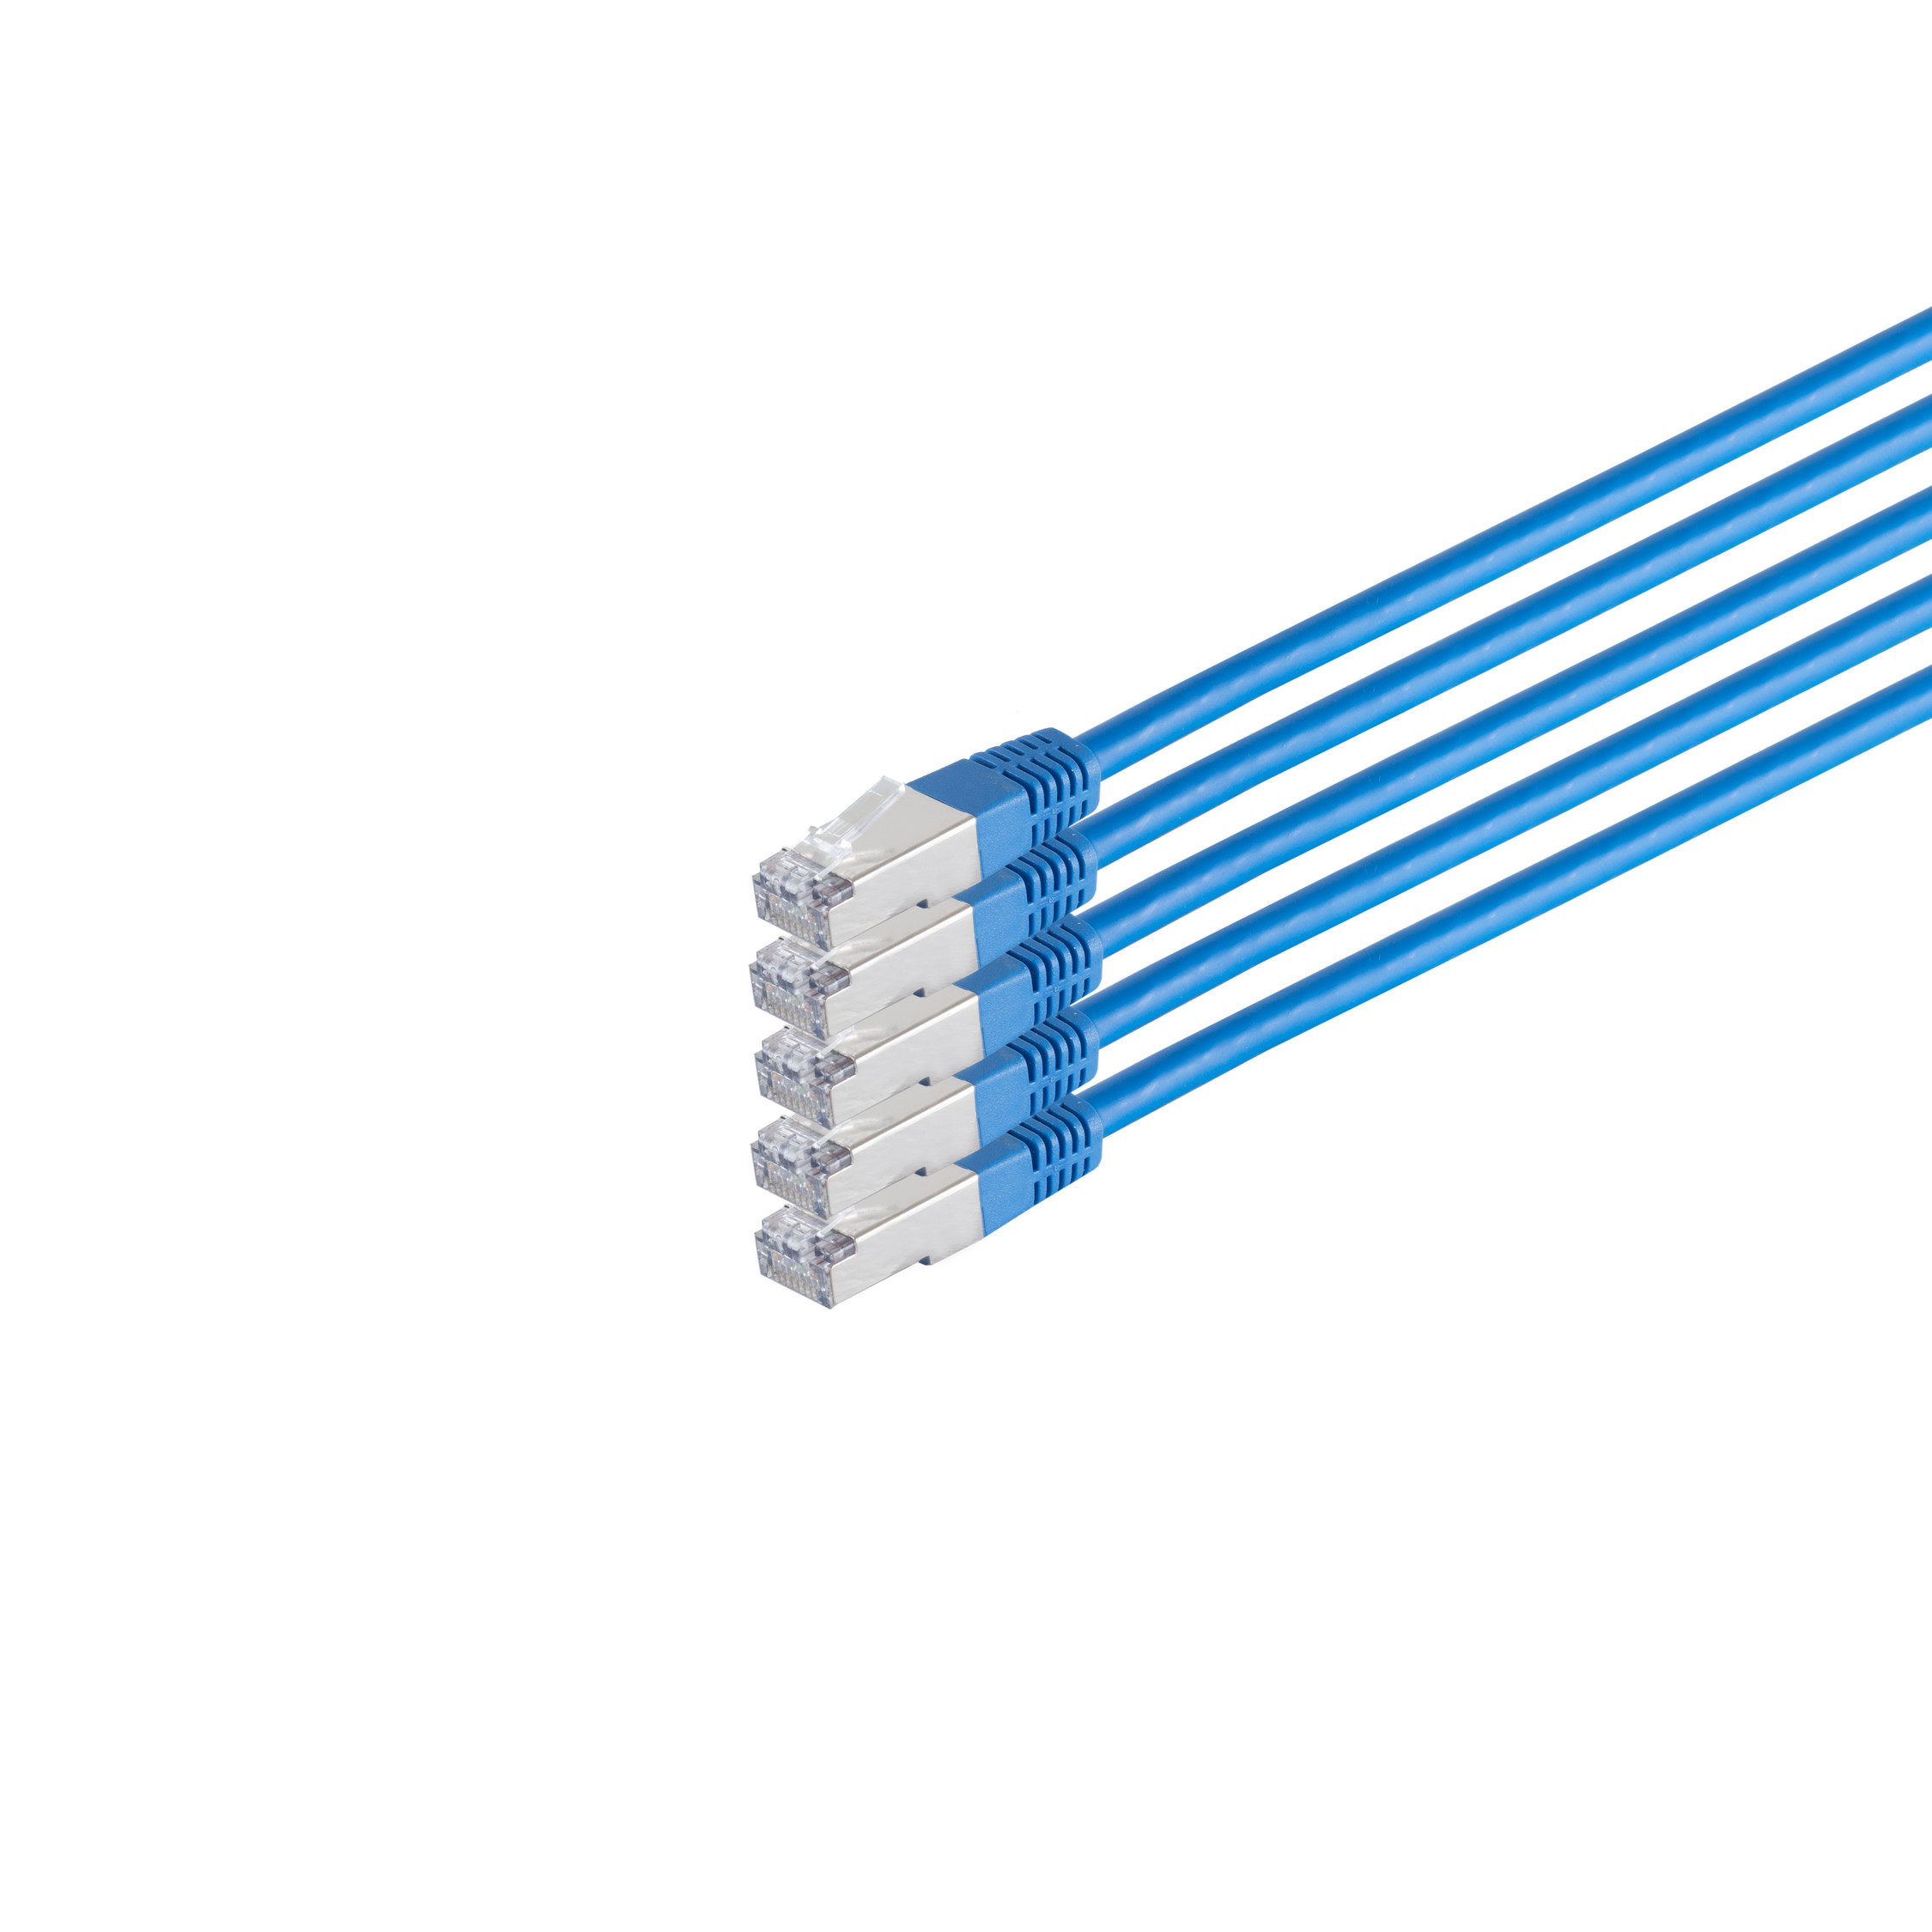 S/CONN MAXIMUM CONNECTIVITY m RJ45, VE5 0,50 S/FTP PIMF cat Patchkabel 6 0,5m, Patchkabel HF blau